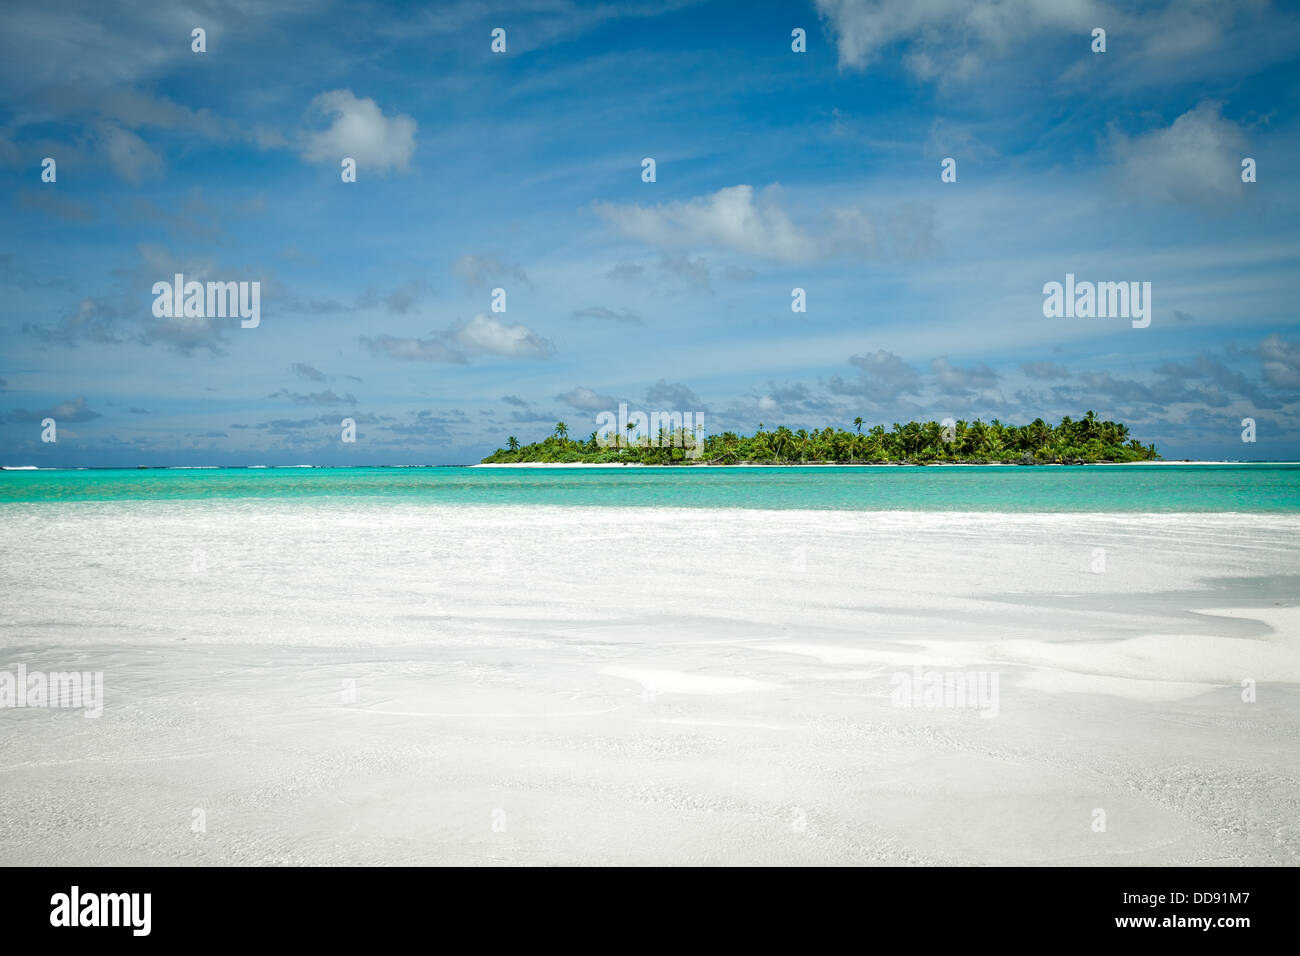 Atoll Maina comme vu de la plage de sable blanc de l'île de miel du désert, Aitutaki Lagoon Cook Islands South Pacific - Banque D'Images